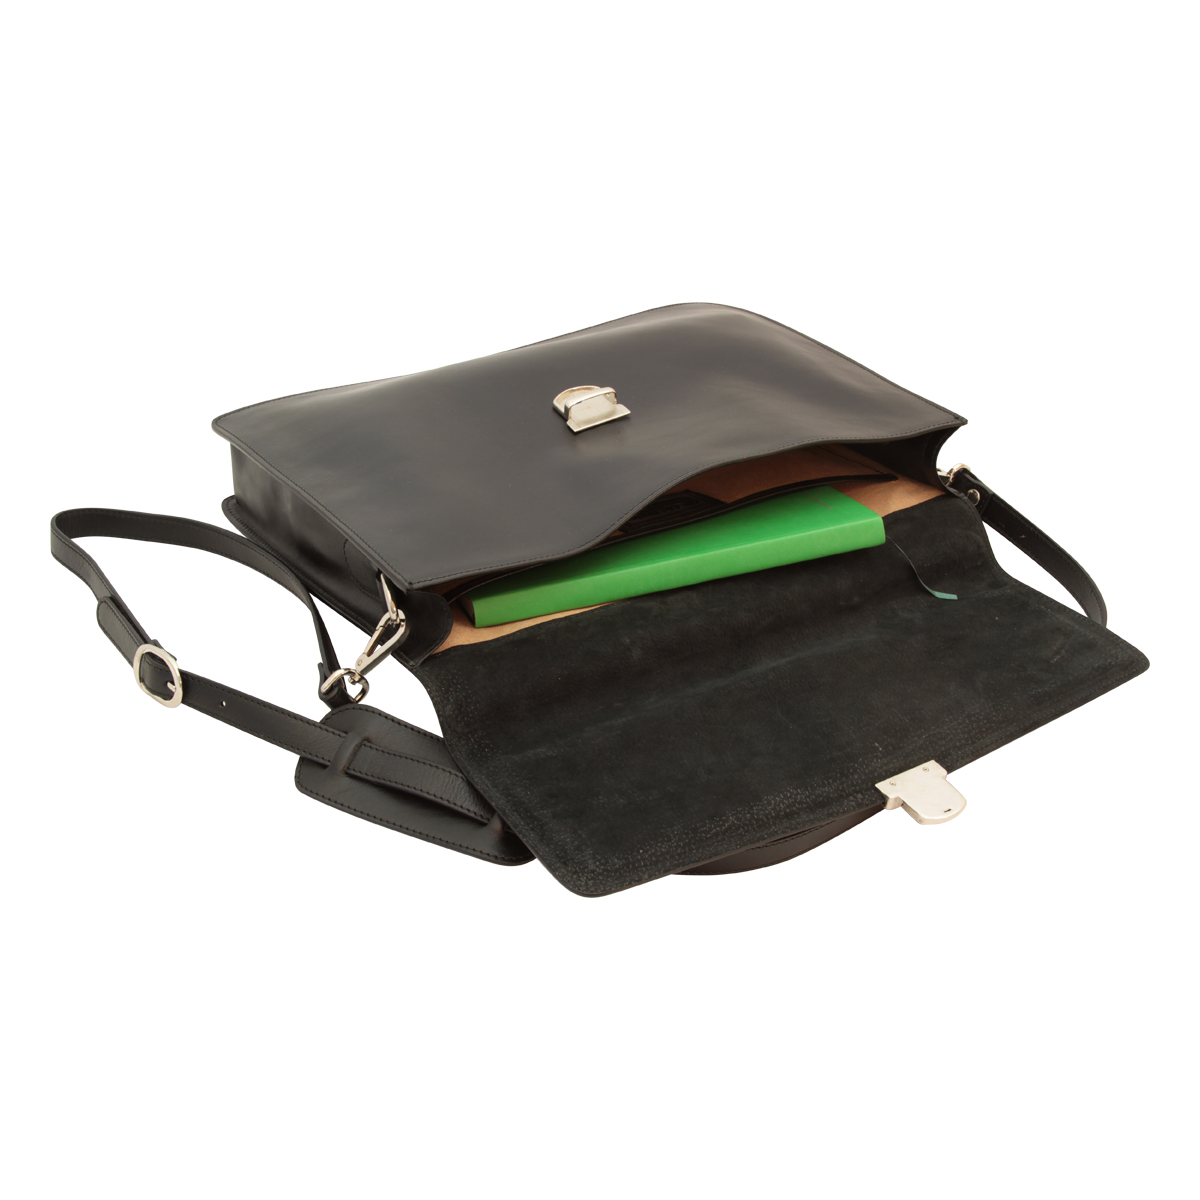 Business leather briefcase black | 407589NE UK | Old Angler Firenze